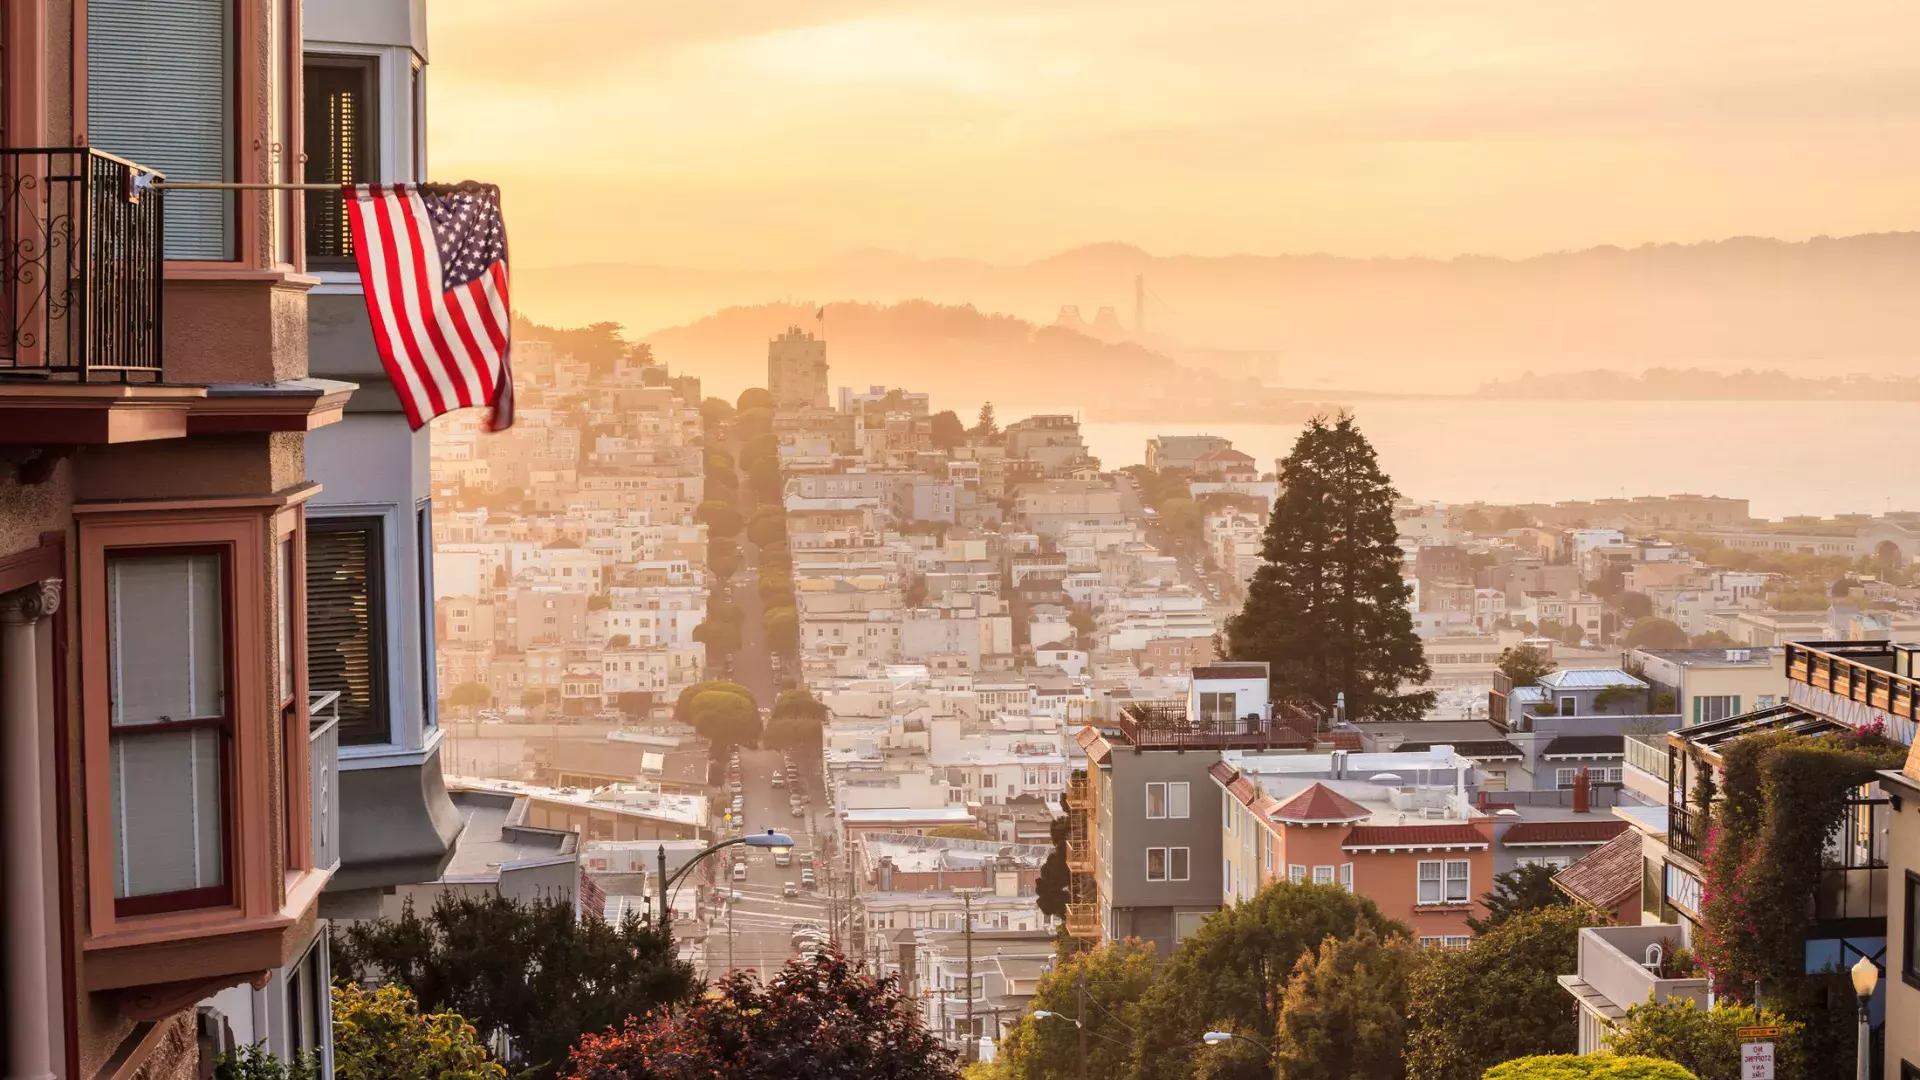 Una vista di San Francisco dalla cima di una collina, con una bandiera americana che sventola in primo piano.